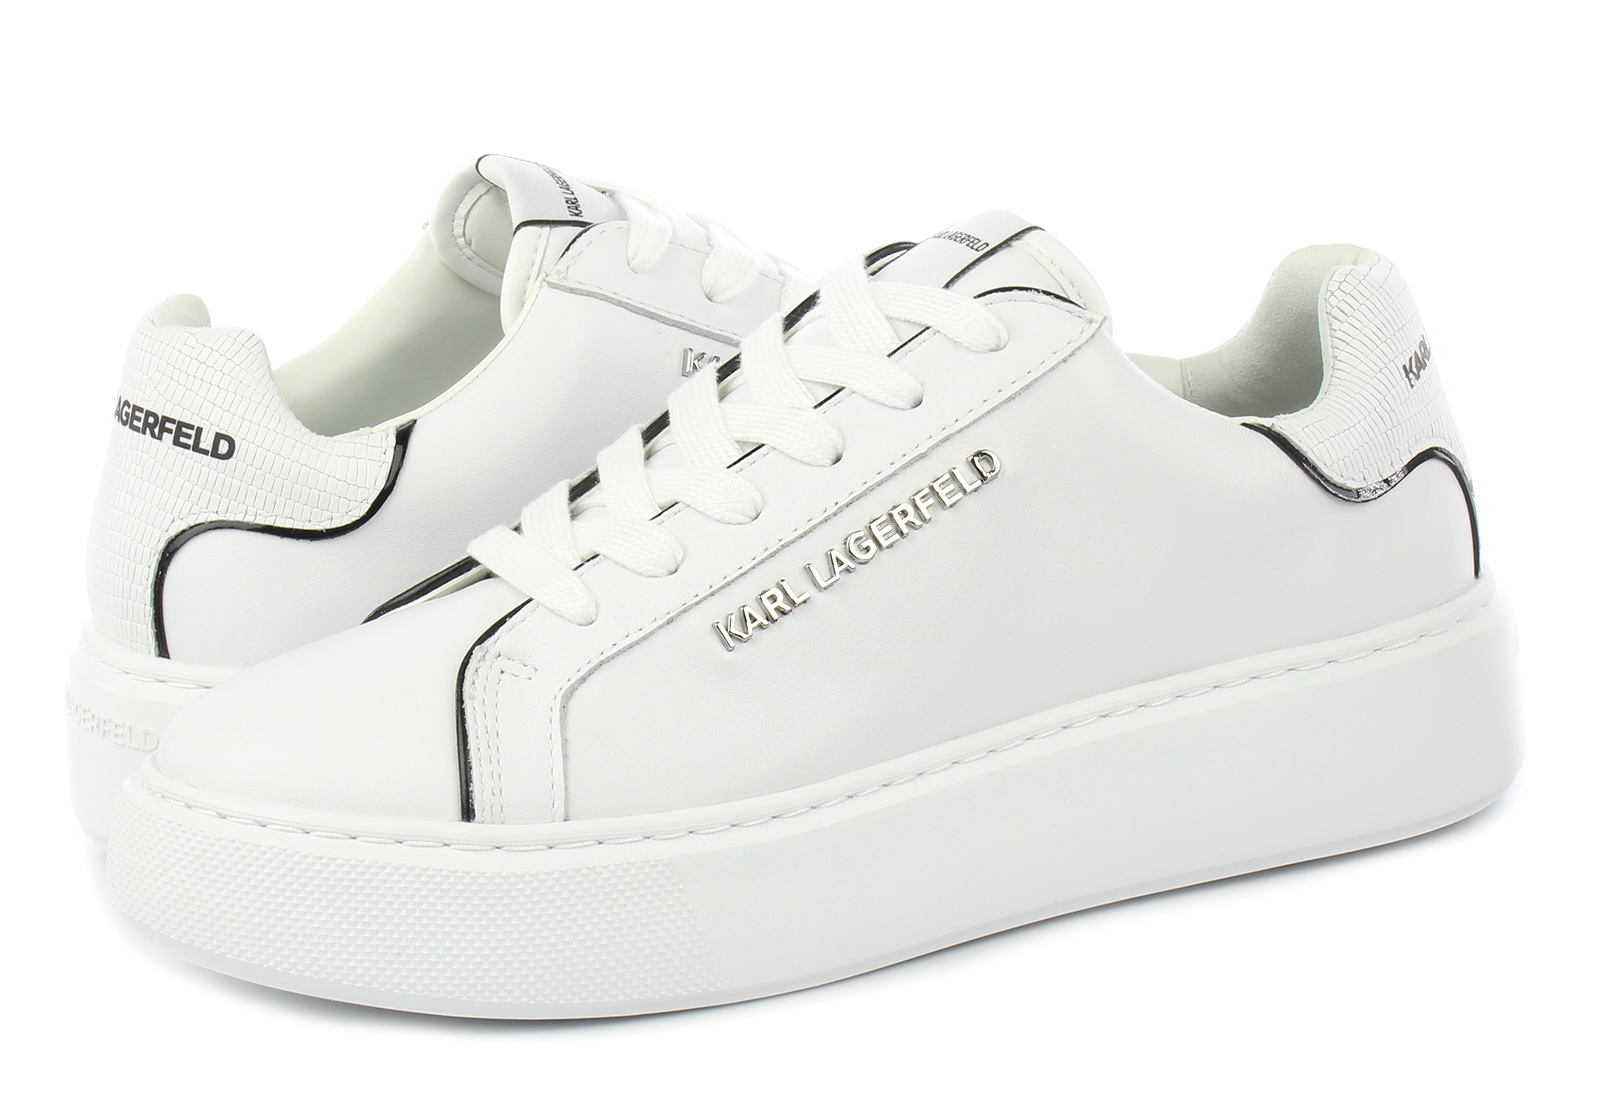 Karl Lagerfeld Sneakers Maxi Kup Sneaker